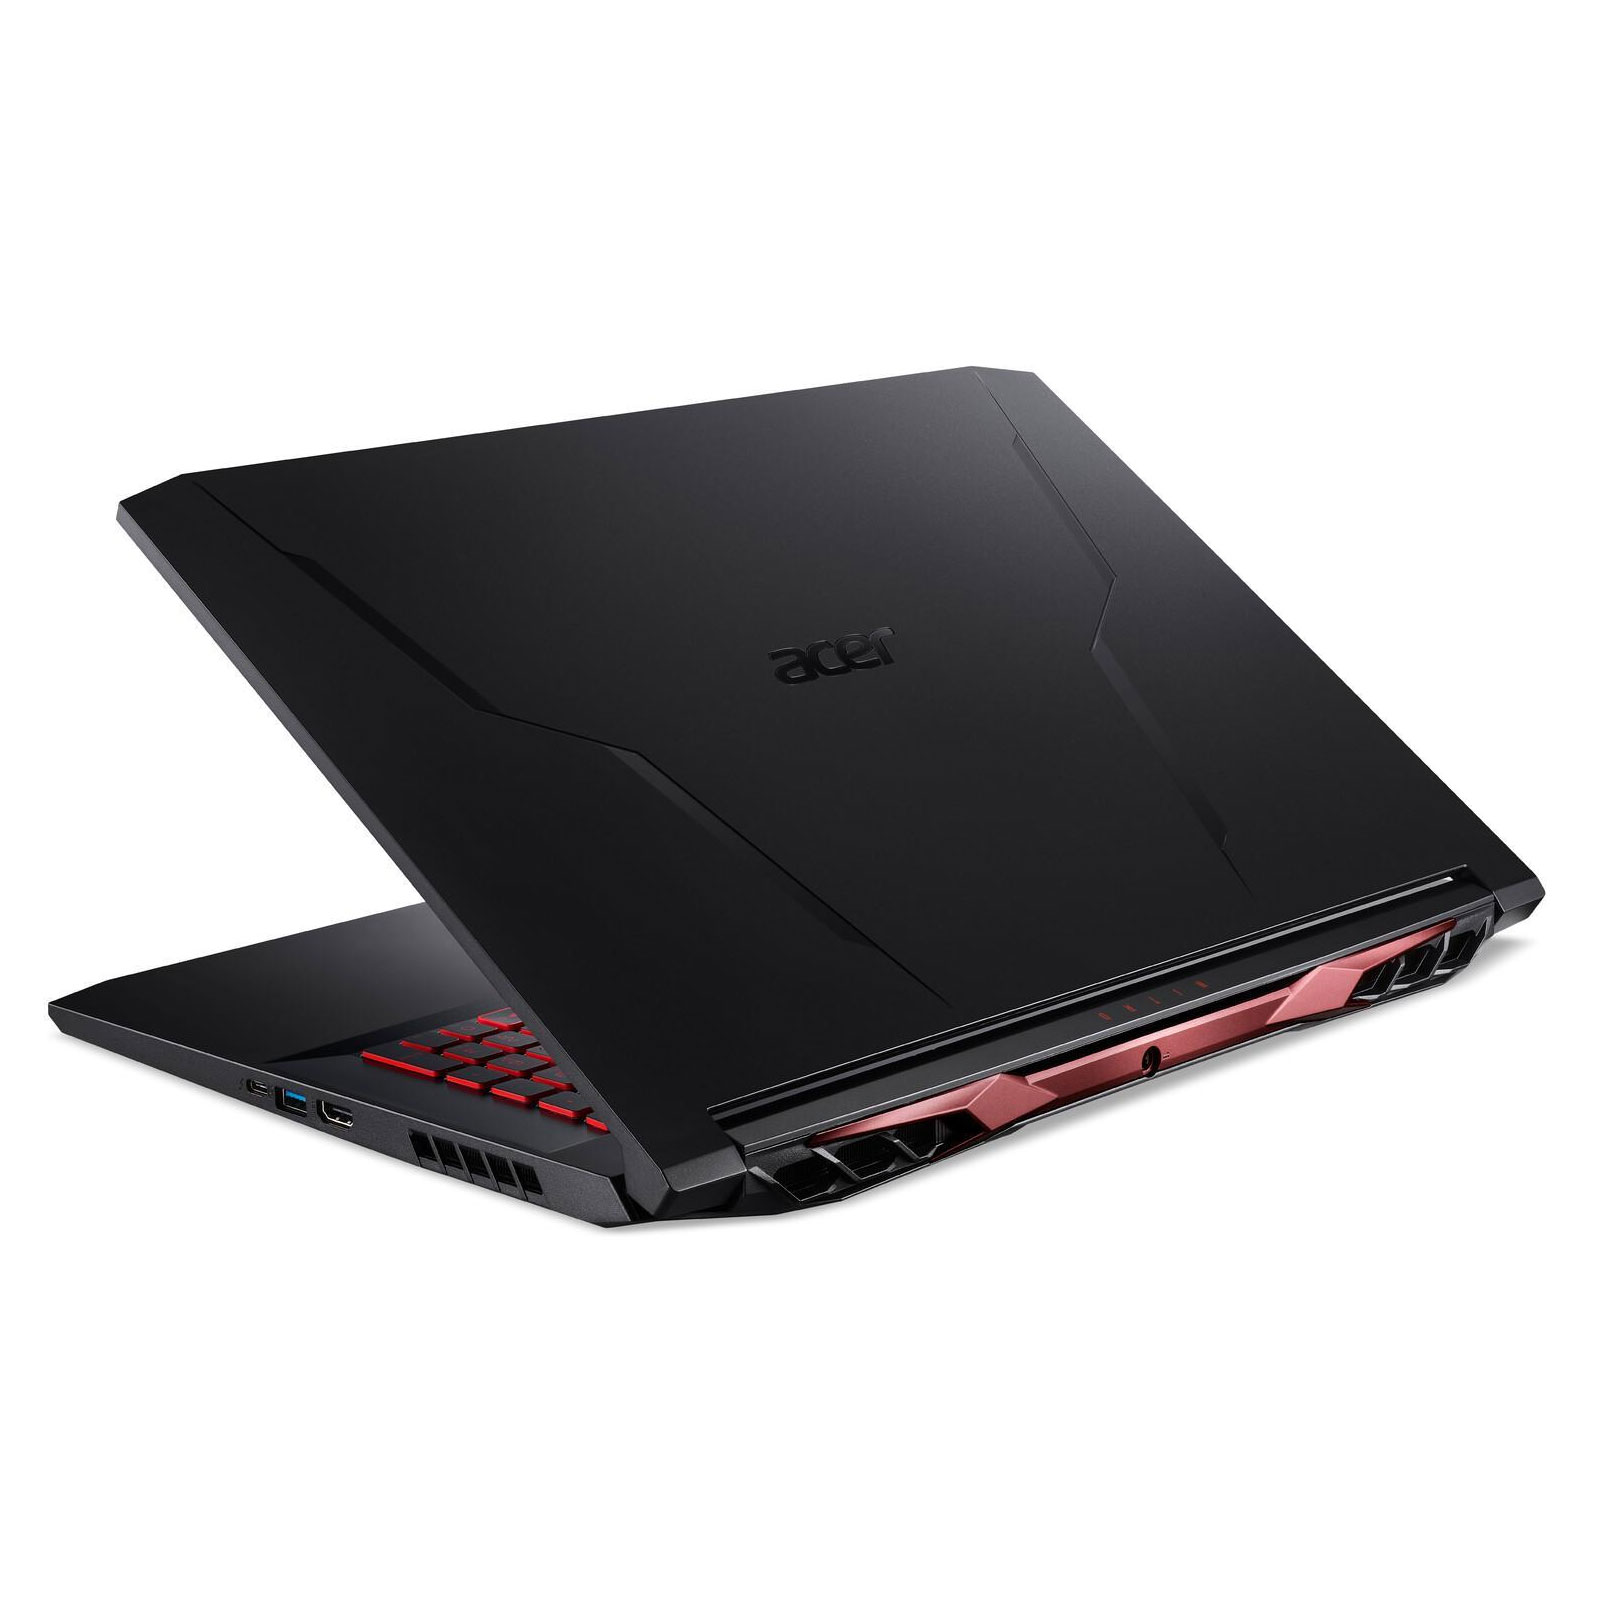 ACER Gaming-Notebook Nitro 5 (AN517-54-786Y), Schwarz, 17,3 Zoll Full-HD, i7-11800H, 16GB, 512GB SSD, GeForce RTX 3050